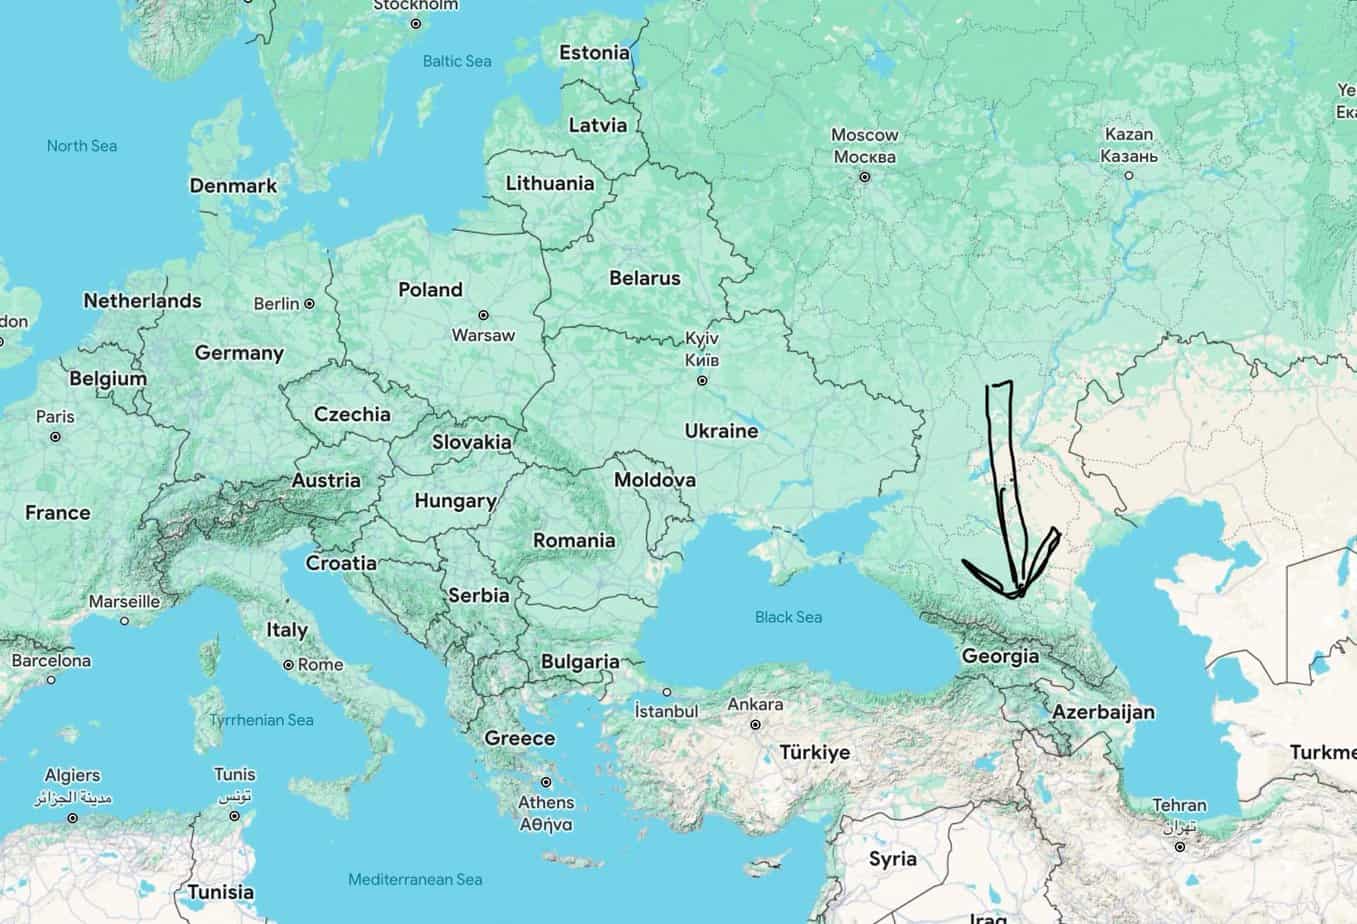 Republic of Georgia borders Russia, and Azerbajhan, far to the east.